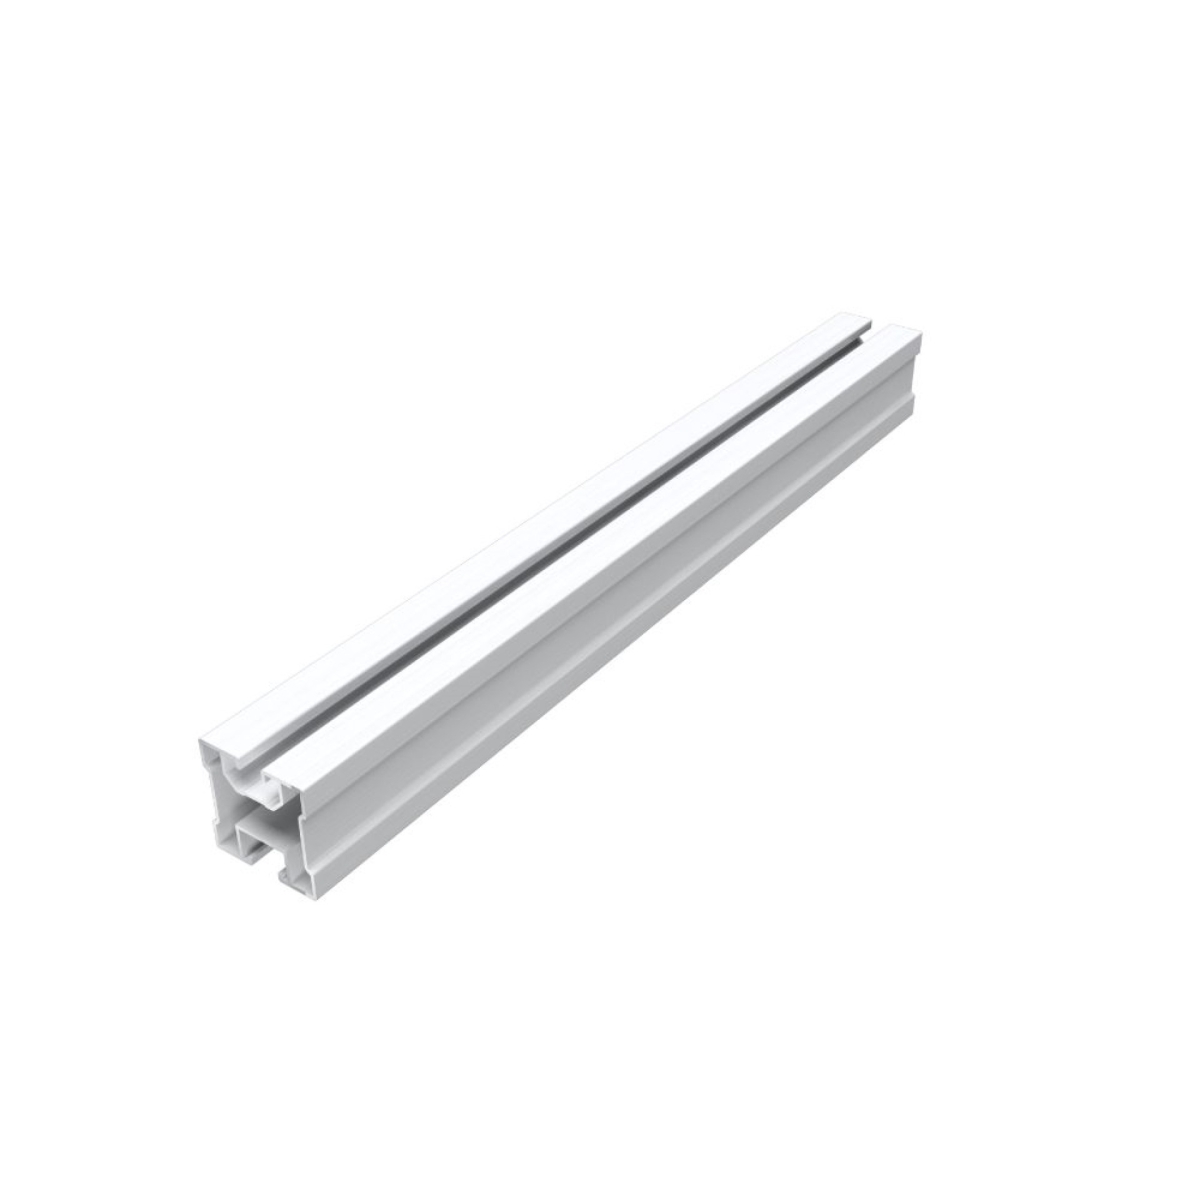 Tile Roof Profile Aluminum (40x40mm) 210 cm Vertical